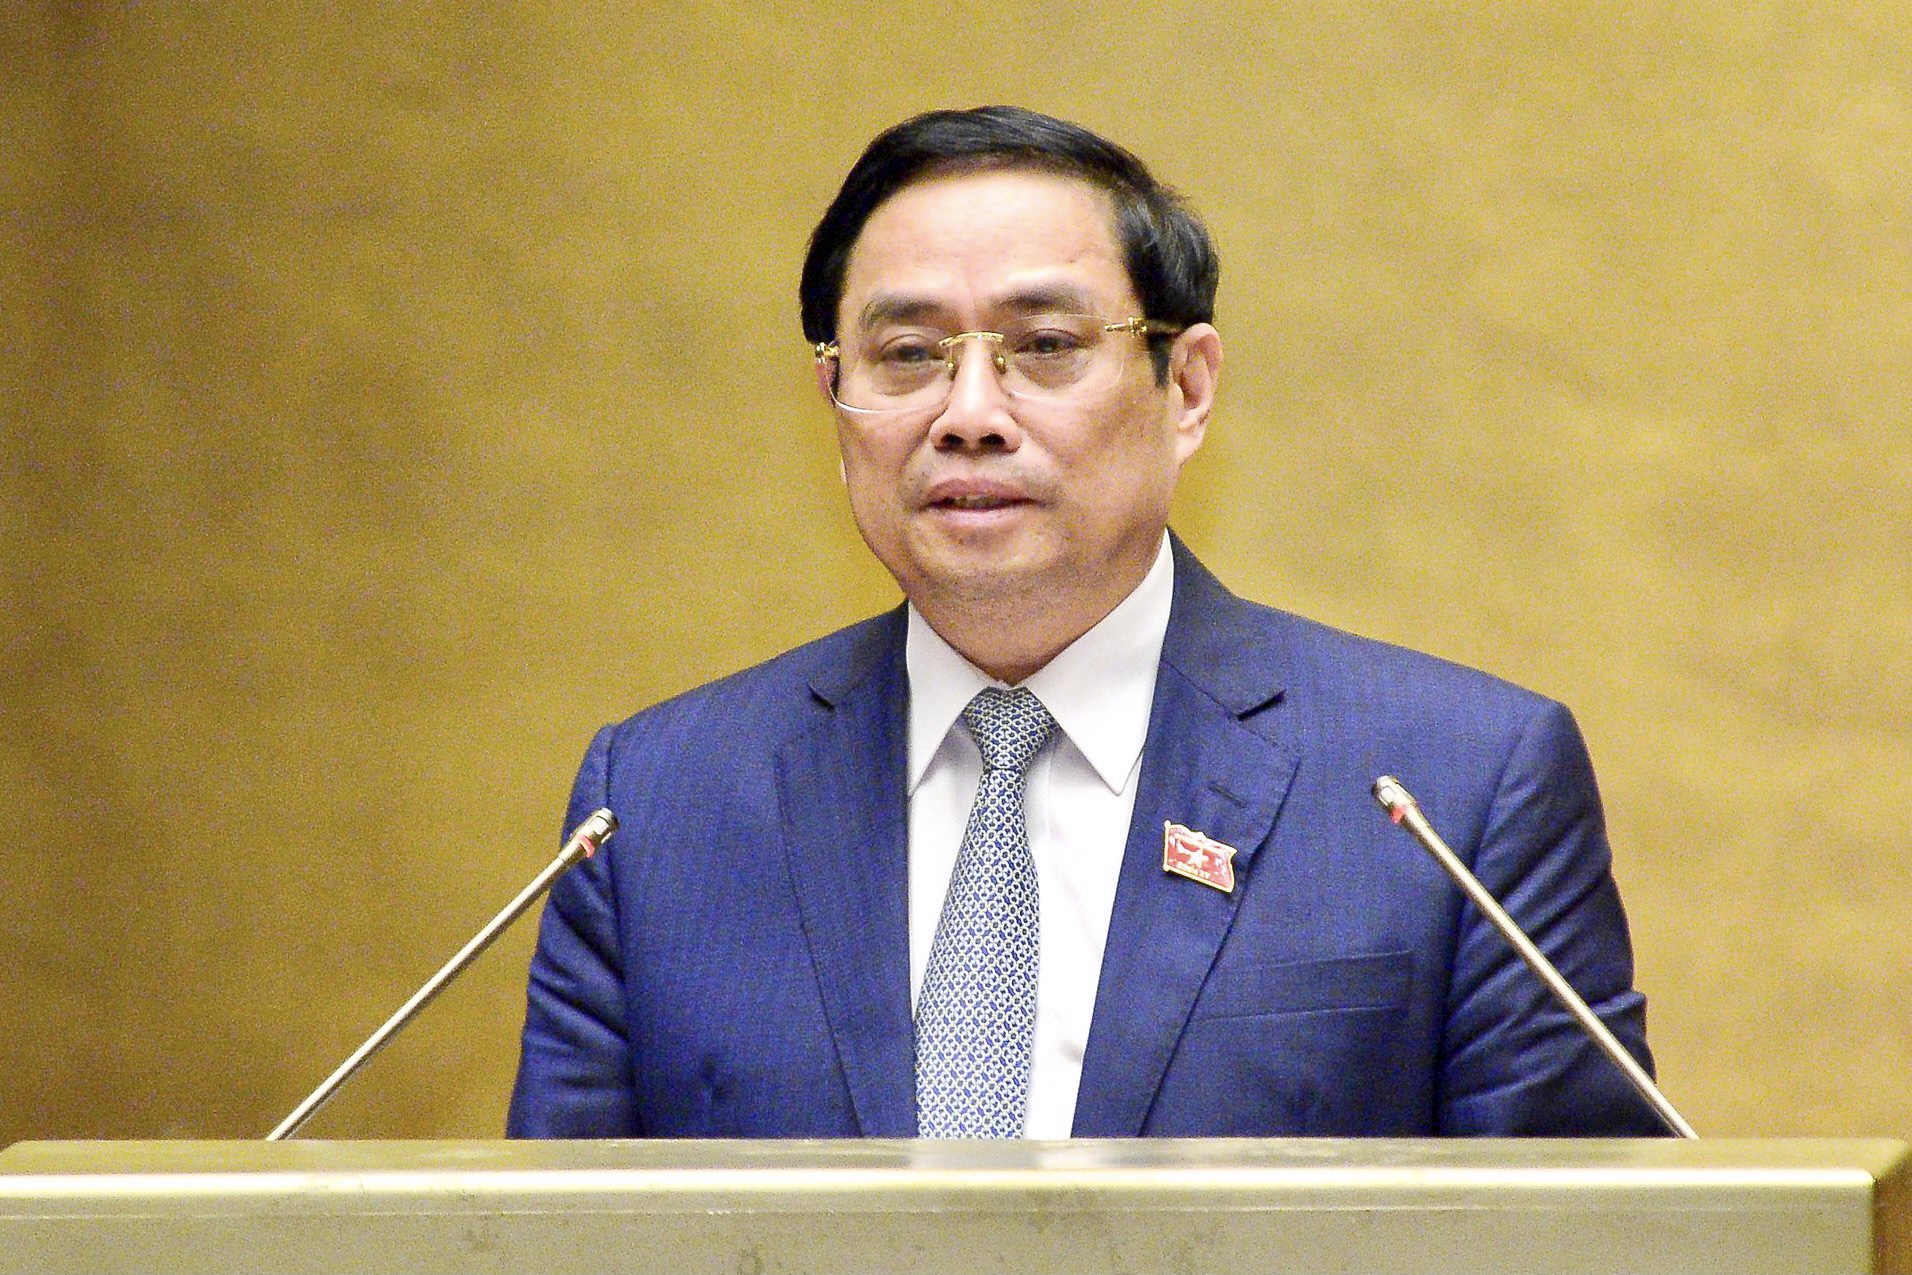 Thủ tướng Phạm Minh Chính nhấn mạnh: Chính phủ đề nghị trước mắt giữ ổn định về tên gọi, cơ cấu tổ chức, số lượng các bộ và cơ quan ngang bộ như khóa XIV